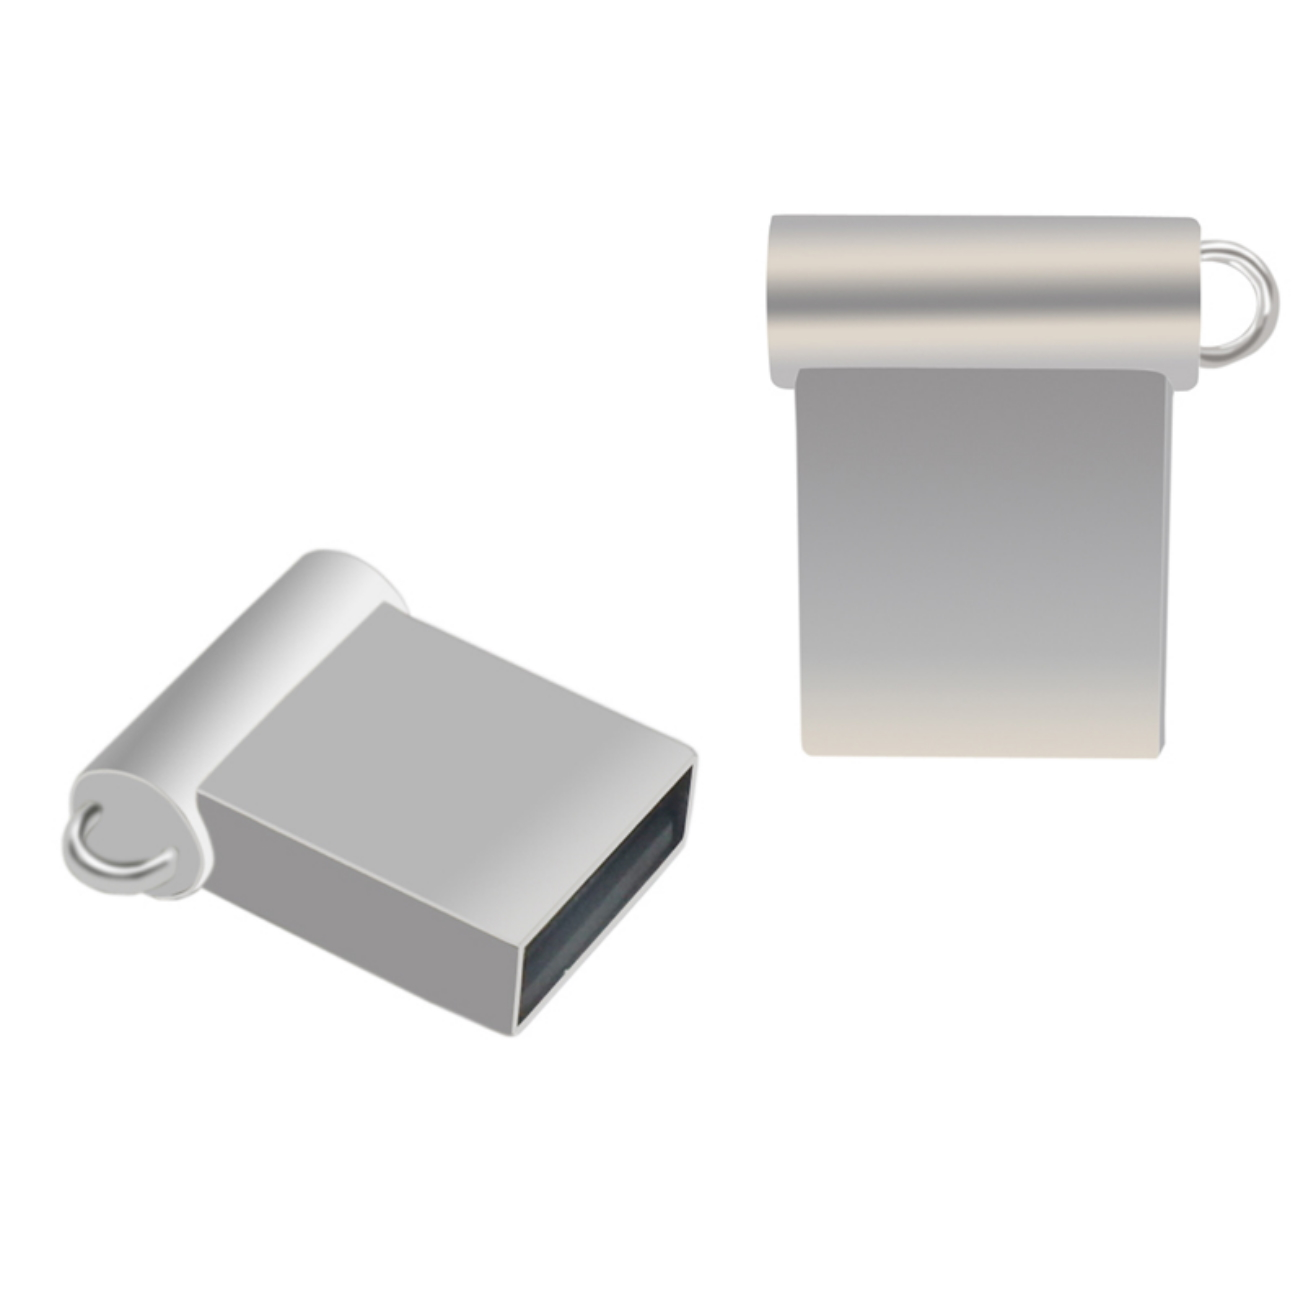 USB GERMANY ® Mini M5 2 USB-Stick (Silber, GB)